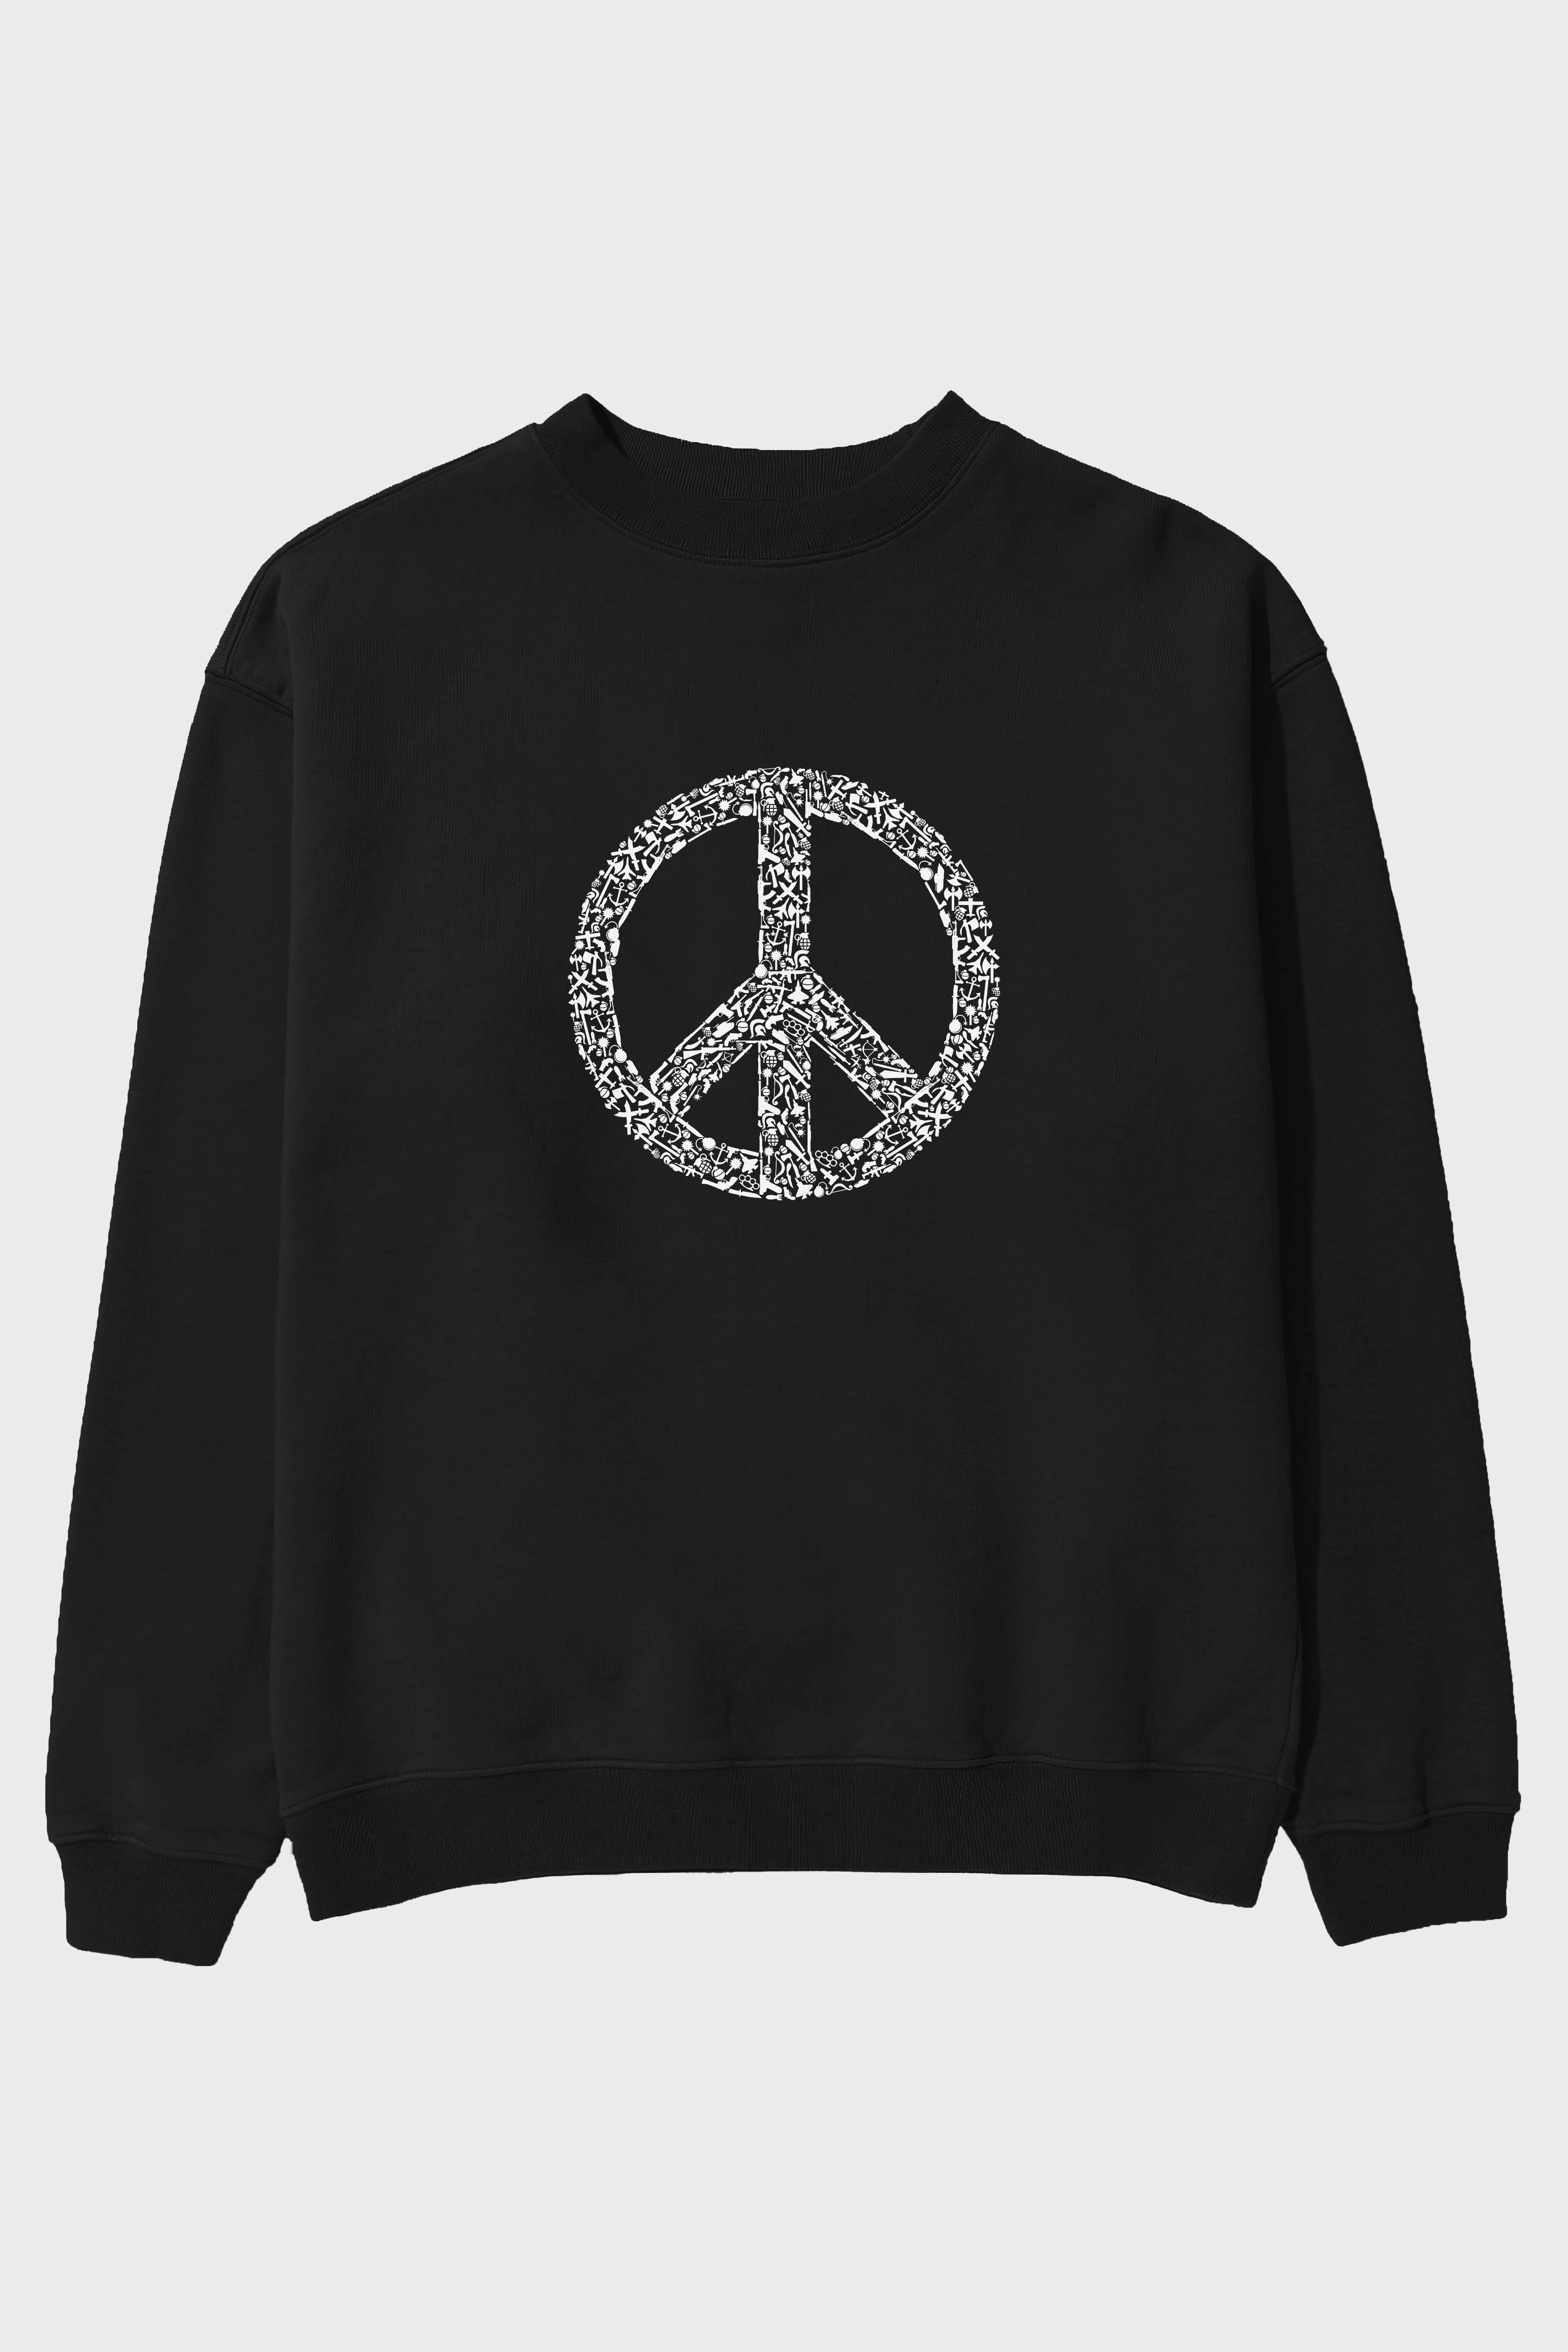 War Peace Ön Baskılı Oversize Sweatshirt Erkek Kadın Unisex